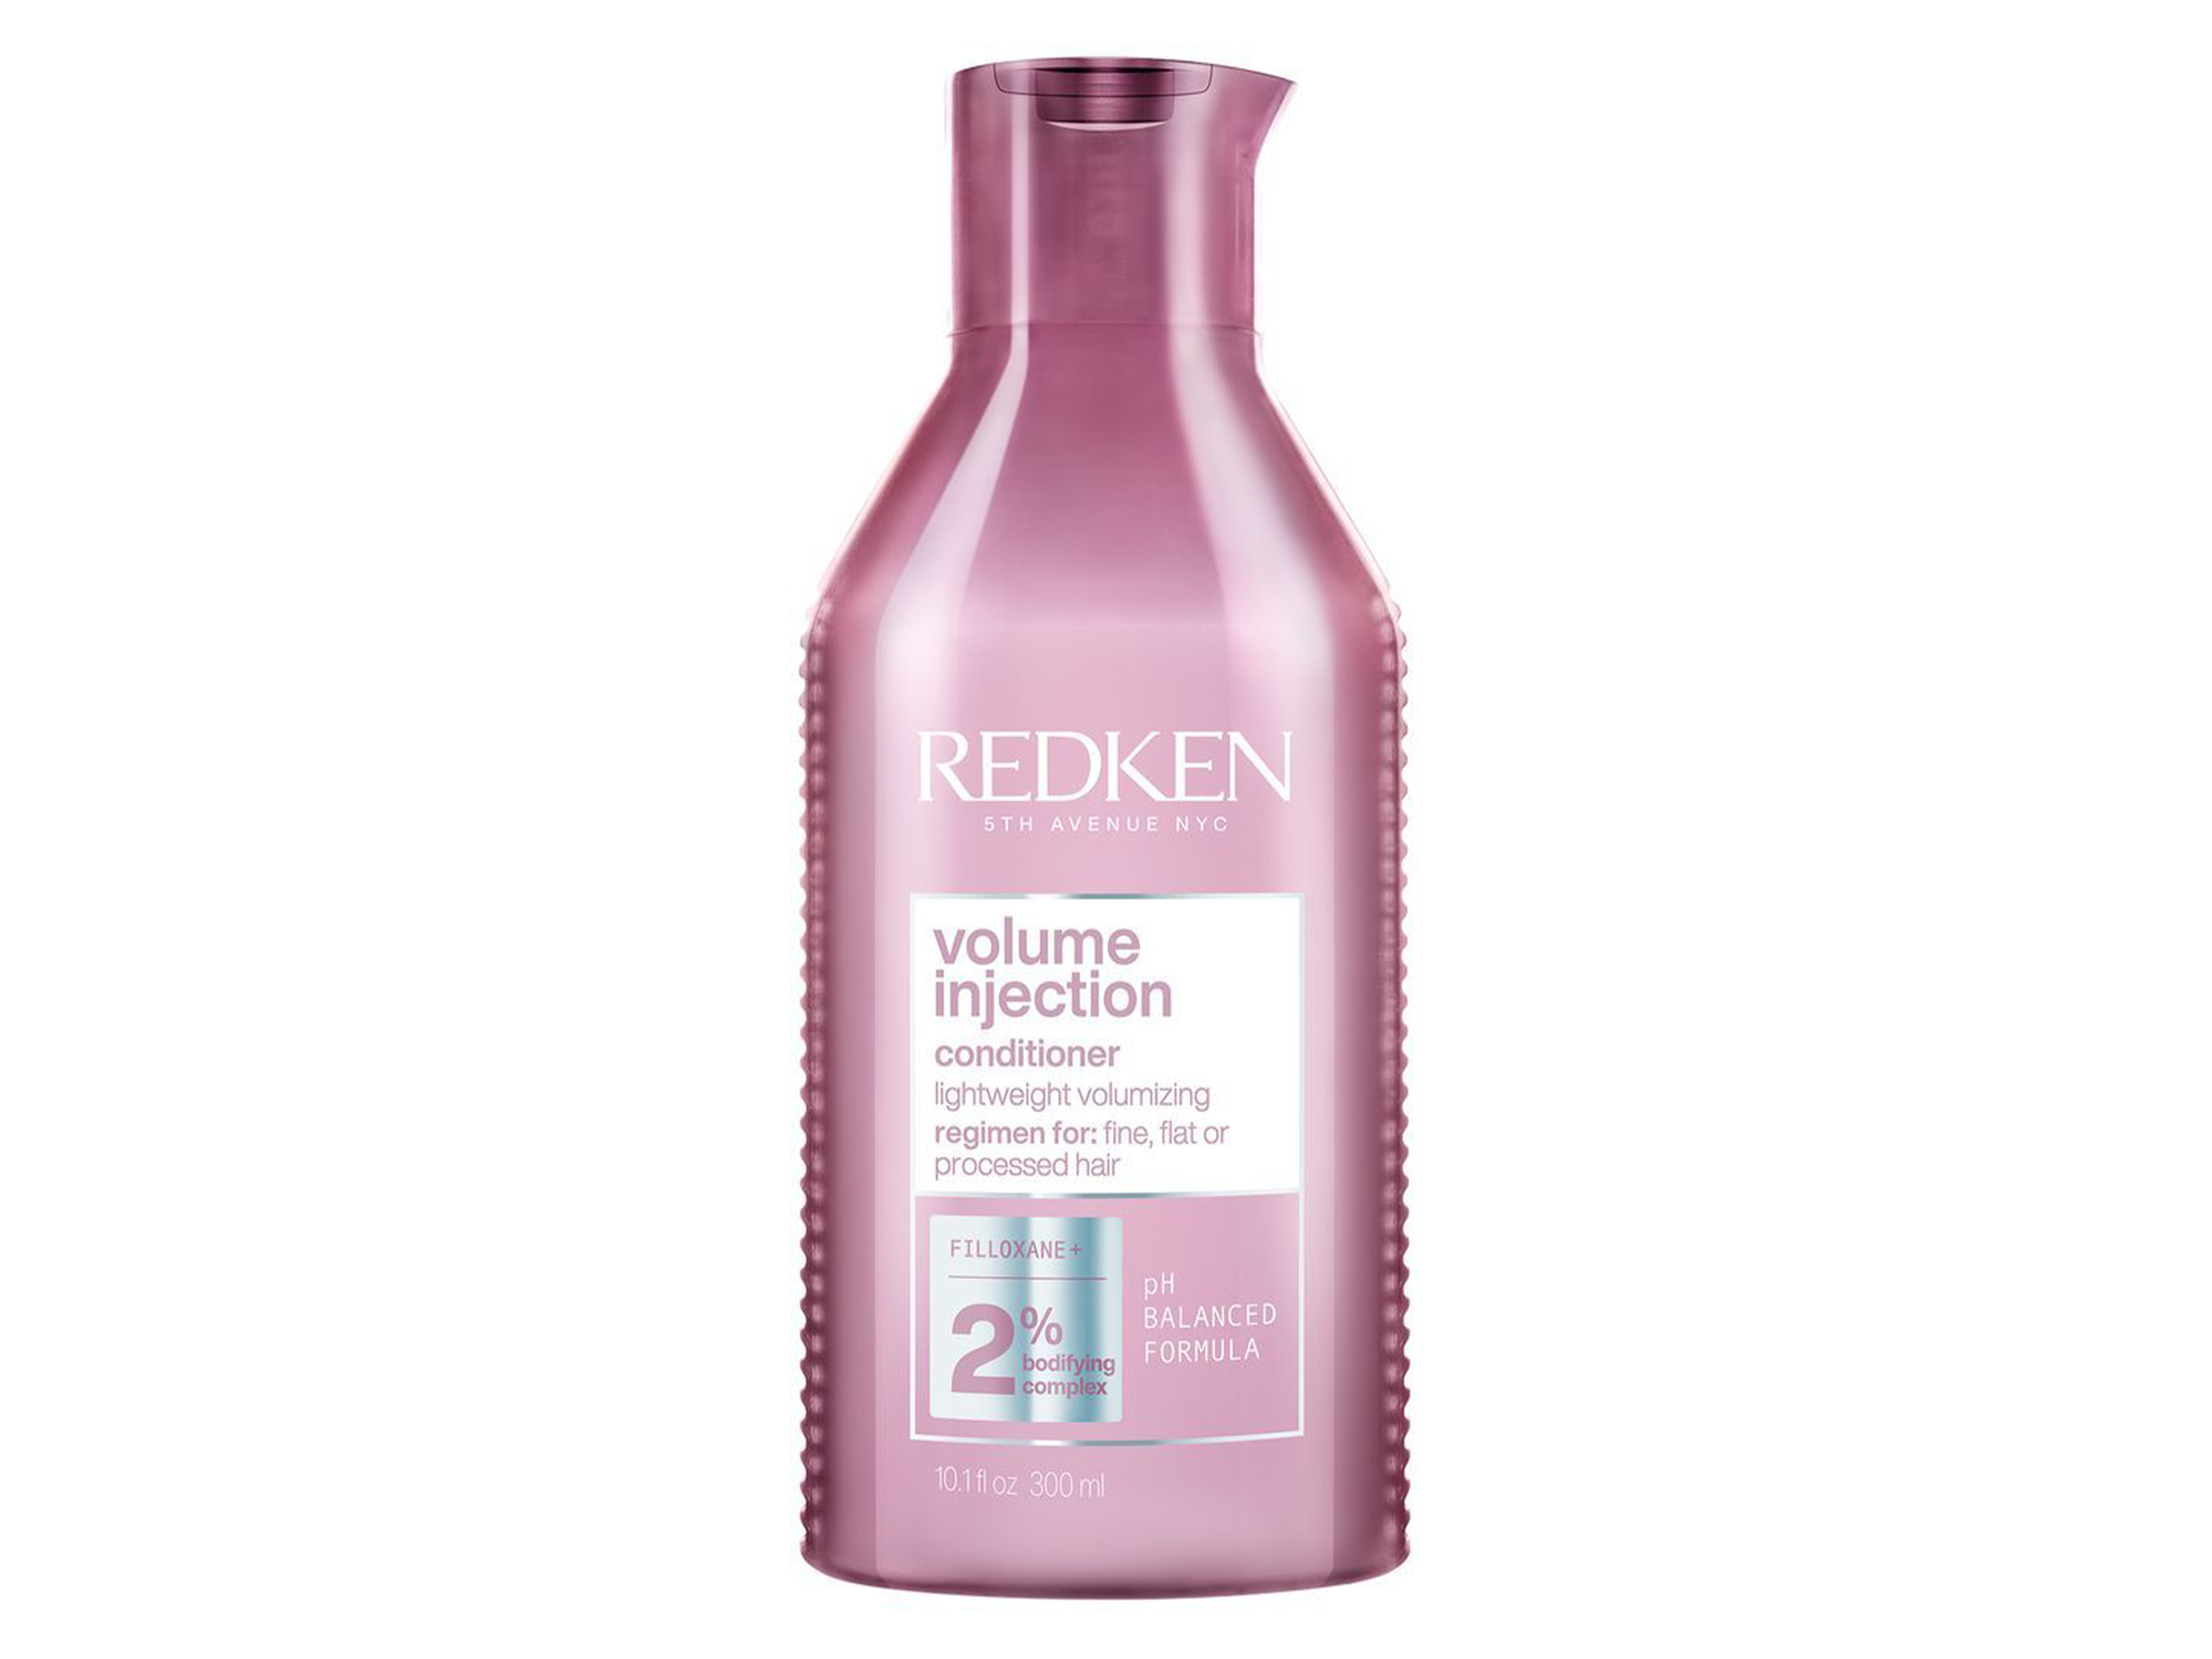 Redken Volume Injection Conditioner, 300 ml